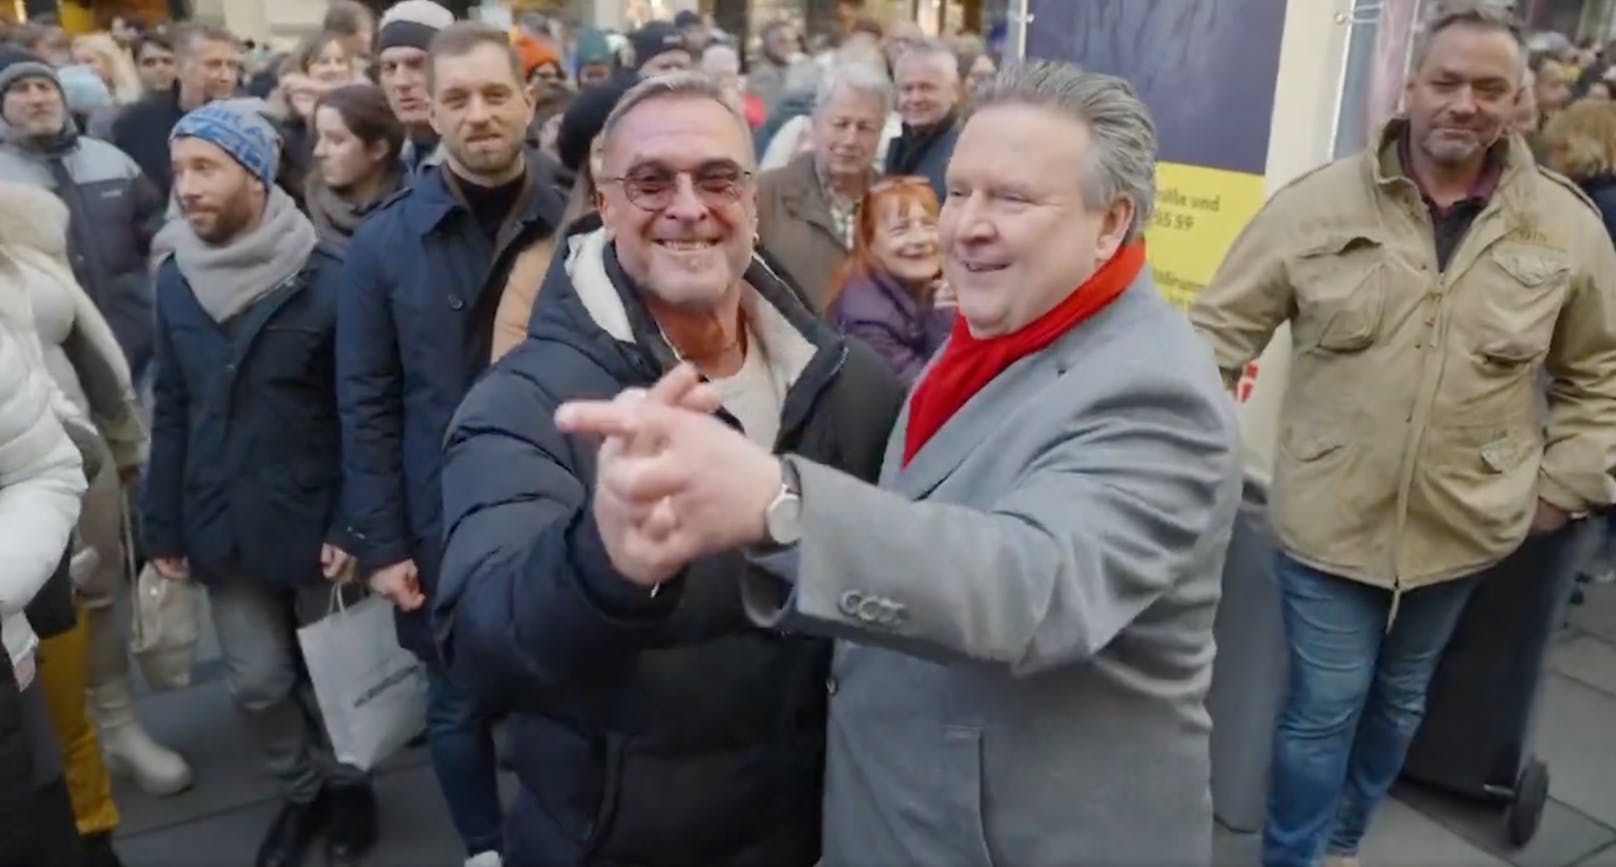 Wiens Stadtchef Michael Ludwig legte am Silvesterpfad ein Tänzchen hin – mit einem Mann.